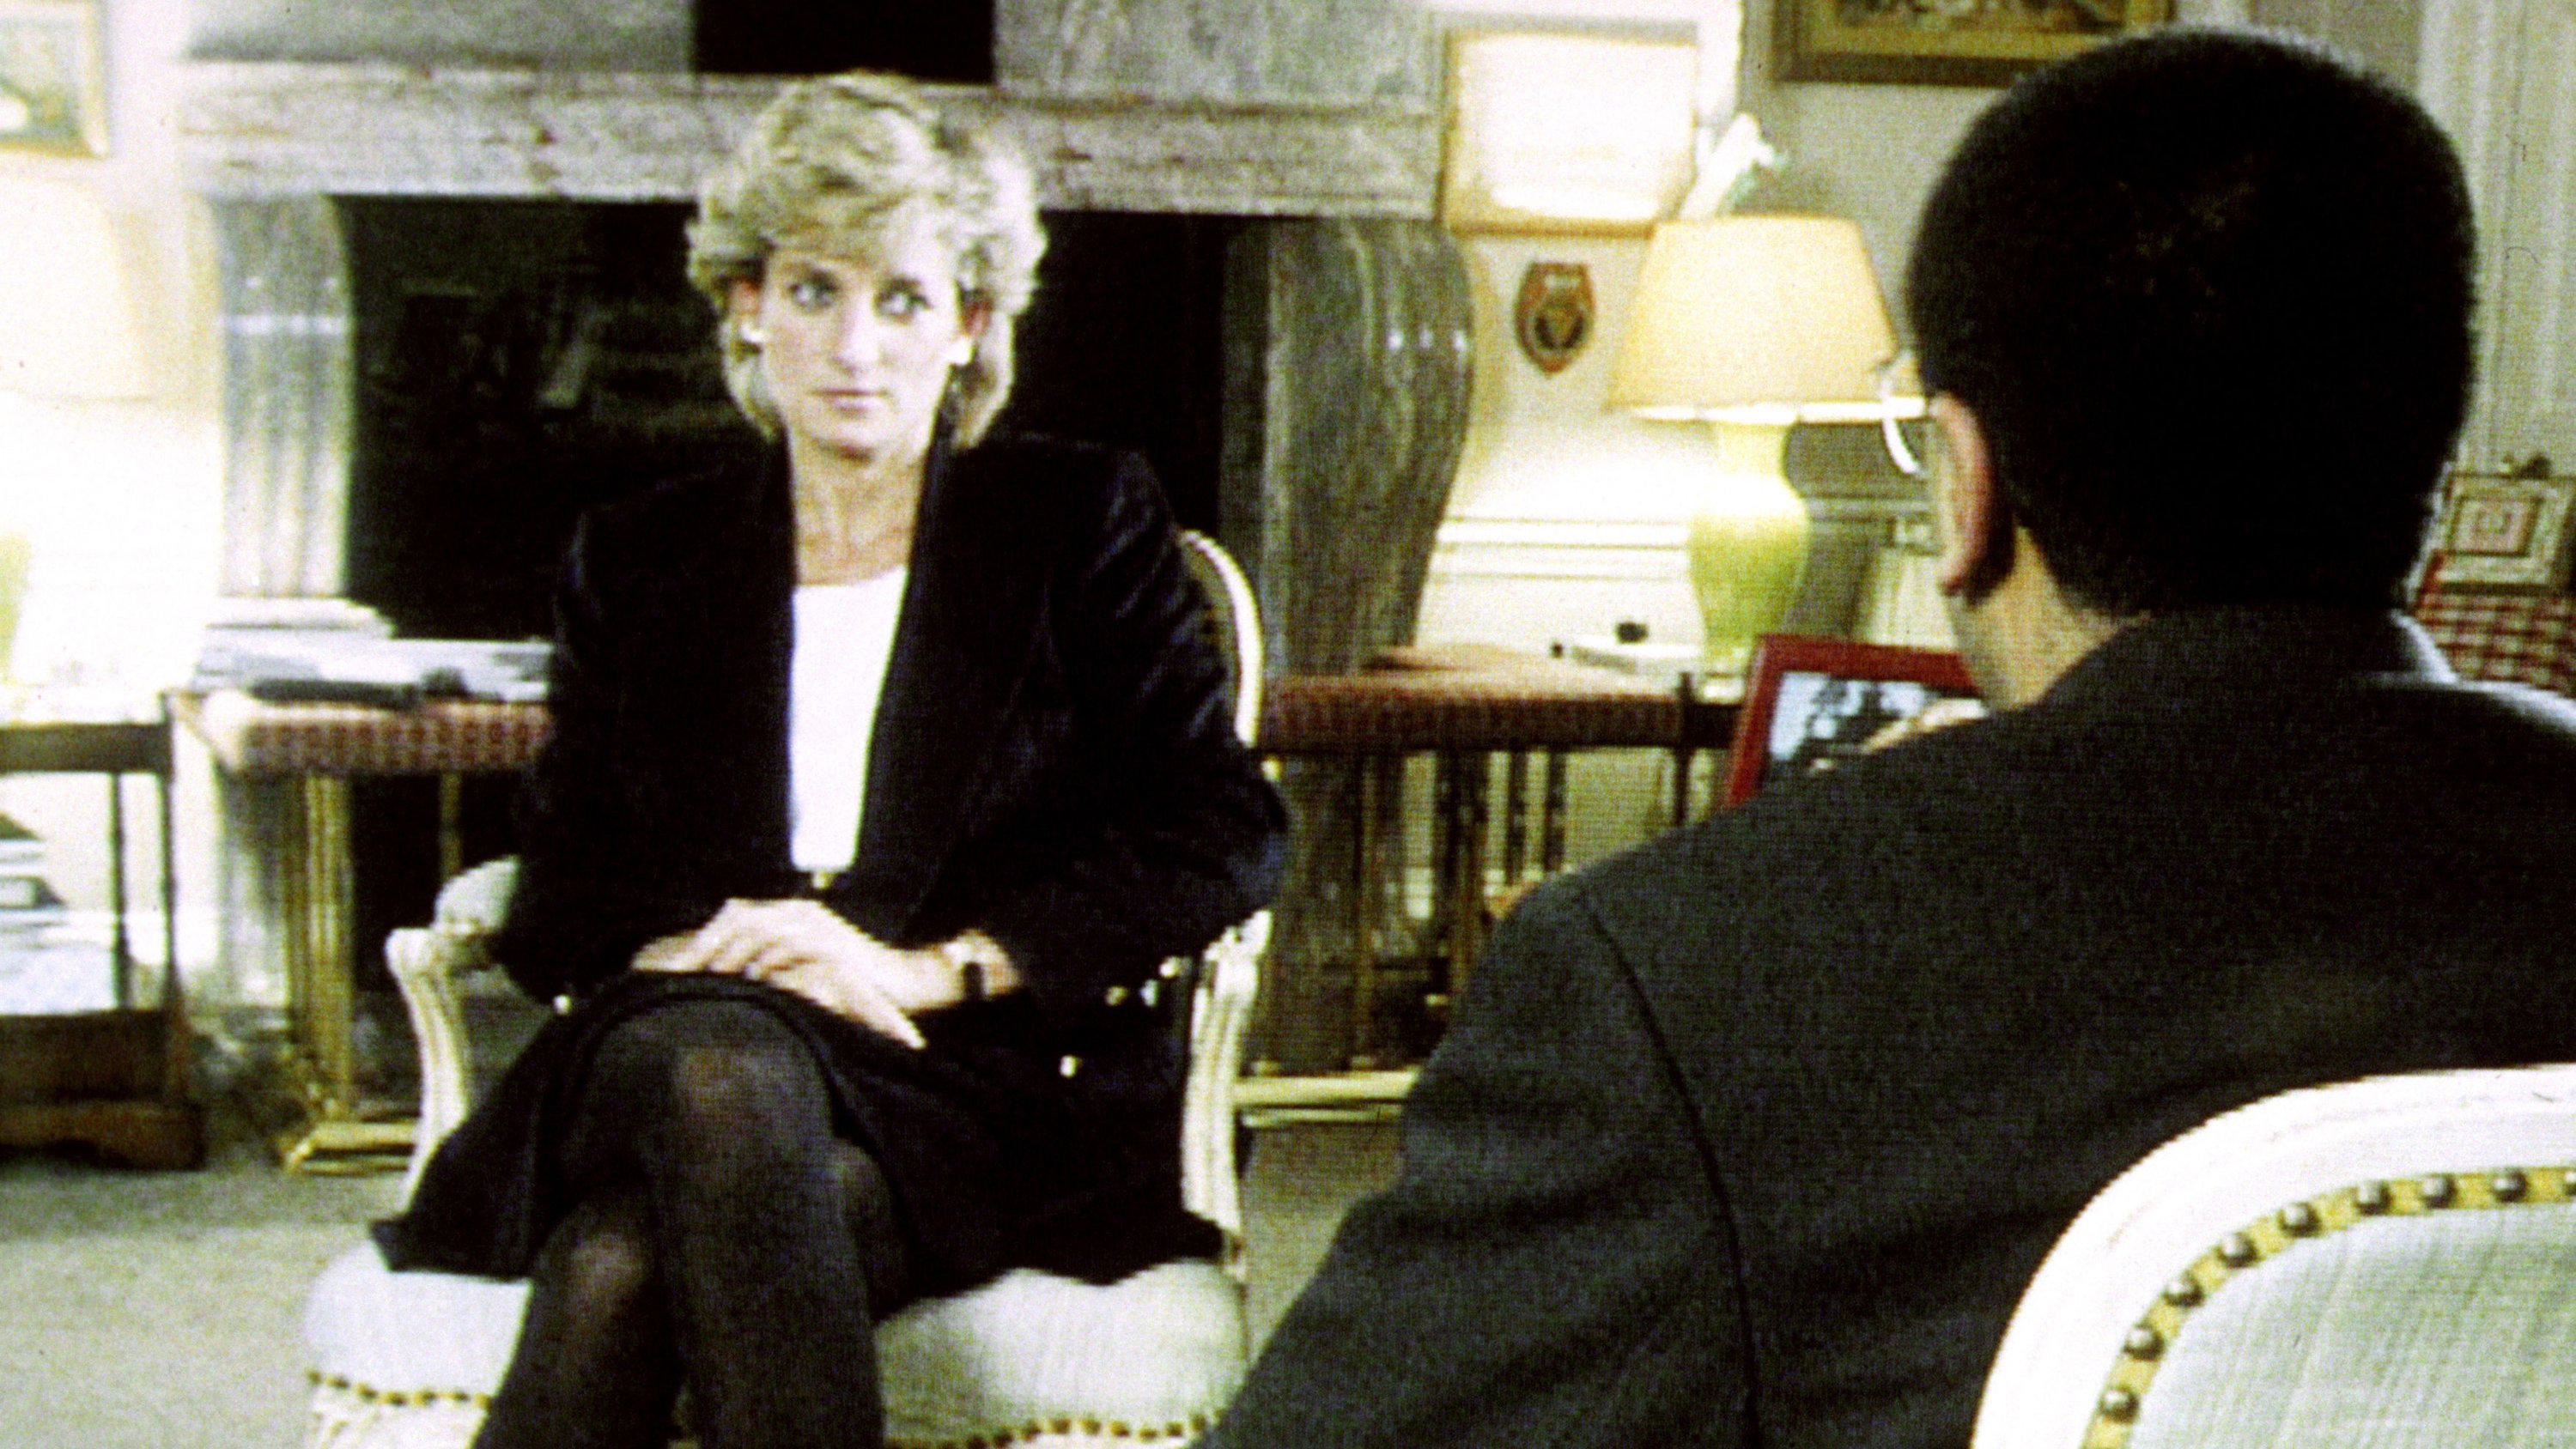 ARCHIV - 20.11.1995, Großbritannien, London: HANDOUT - Prinzessin Diana im Gespräch mit  BBC-Reporter Martin Bashir beim Interview des britische Fernsehsenders BBC. Mehr als 25 Jahre nach einem legendären BBC-Interview mit Prinzessin Diana will der b